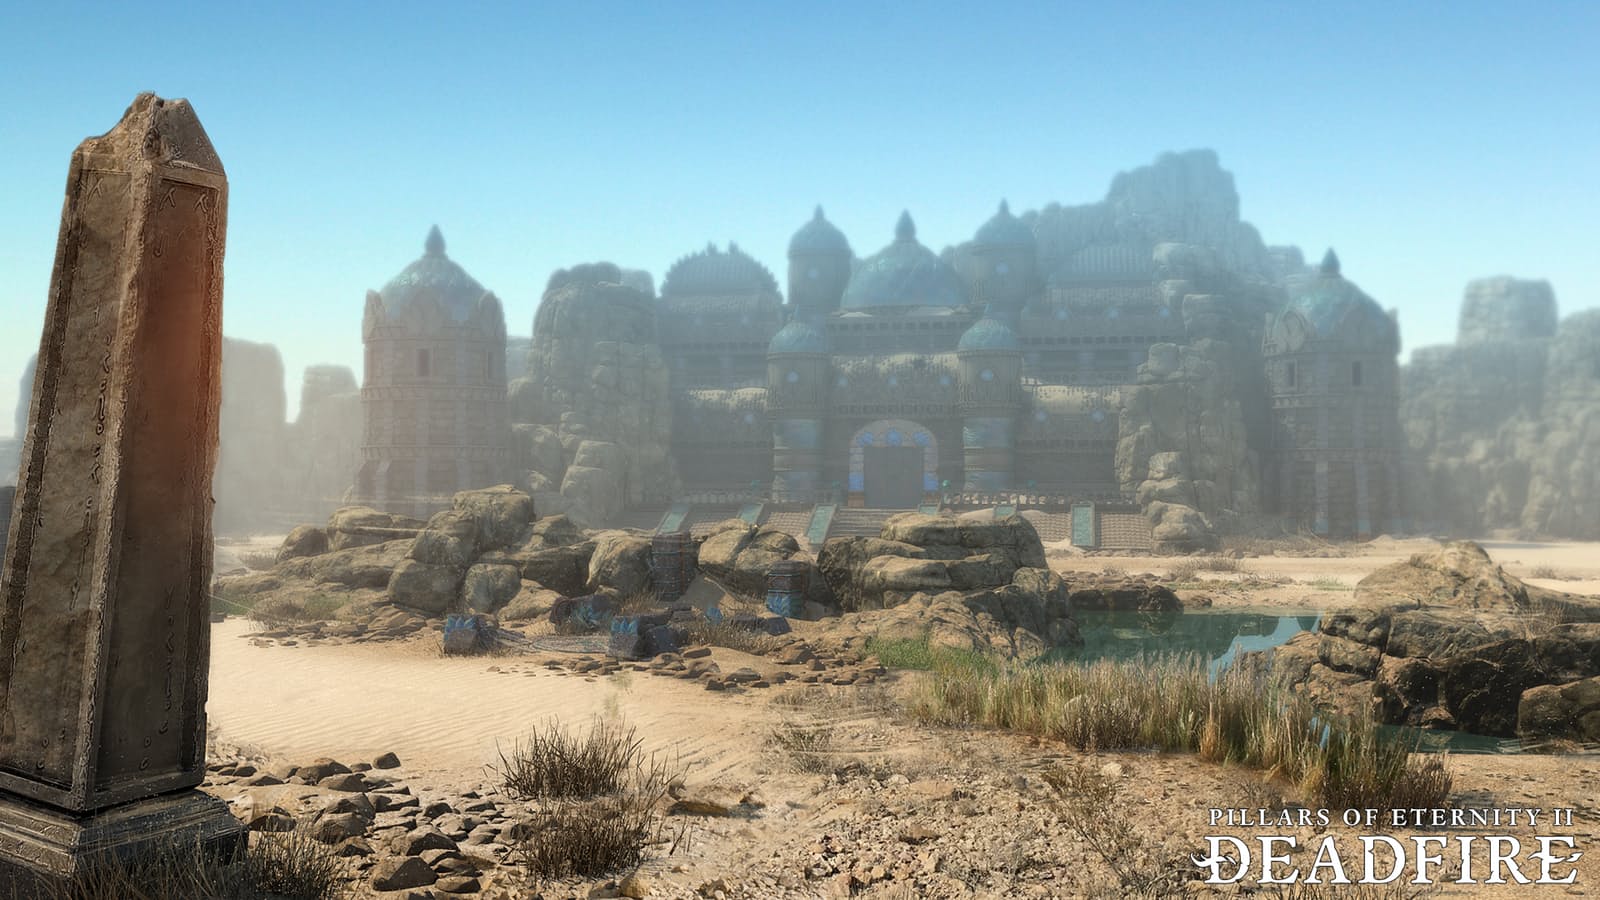 Pillars Of Eternity II: Deadfire Reached It's $1.1 Million Crowdfun